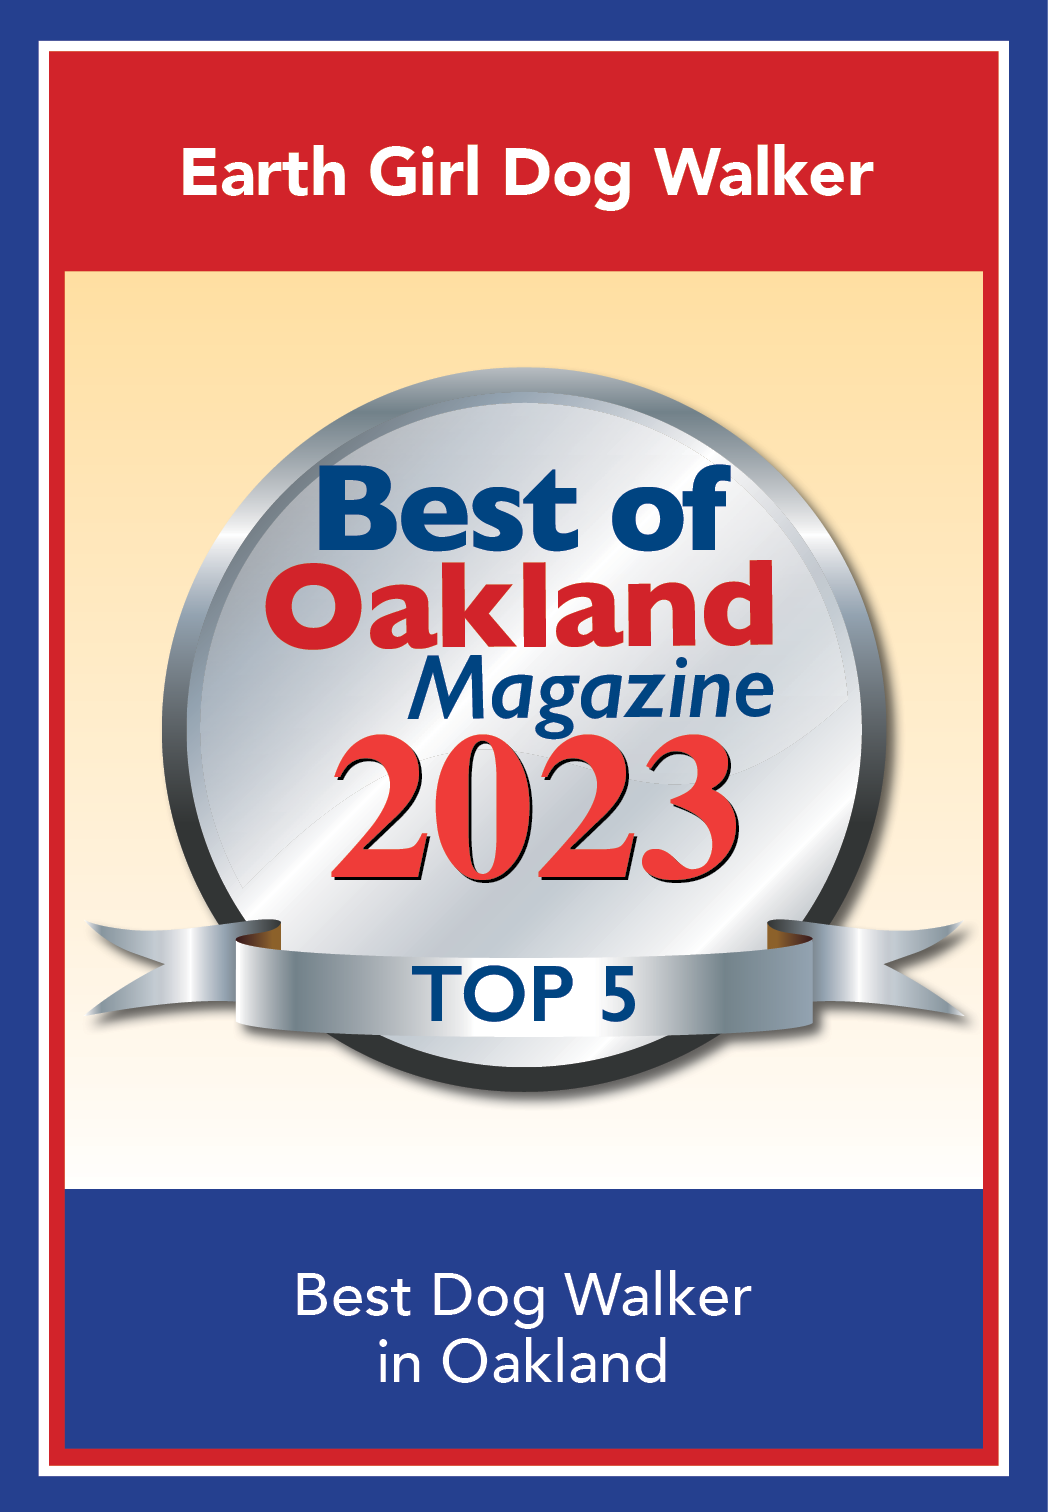 Oakland Magazine Winner 2023.Earth Girl.png